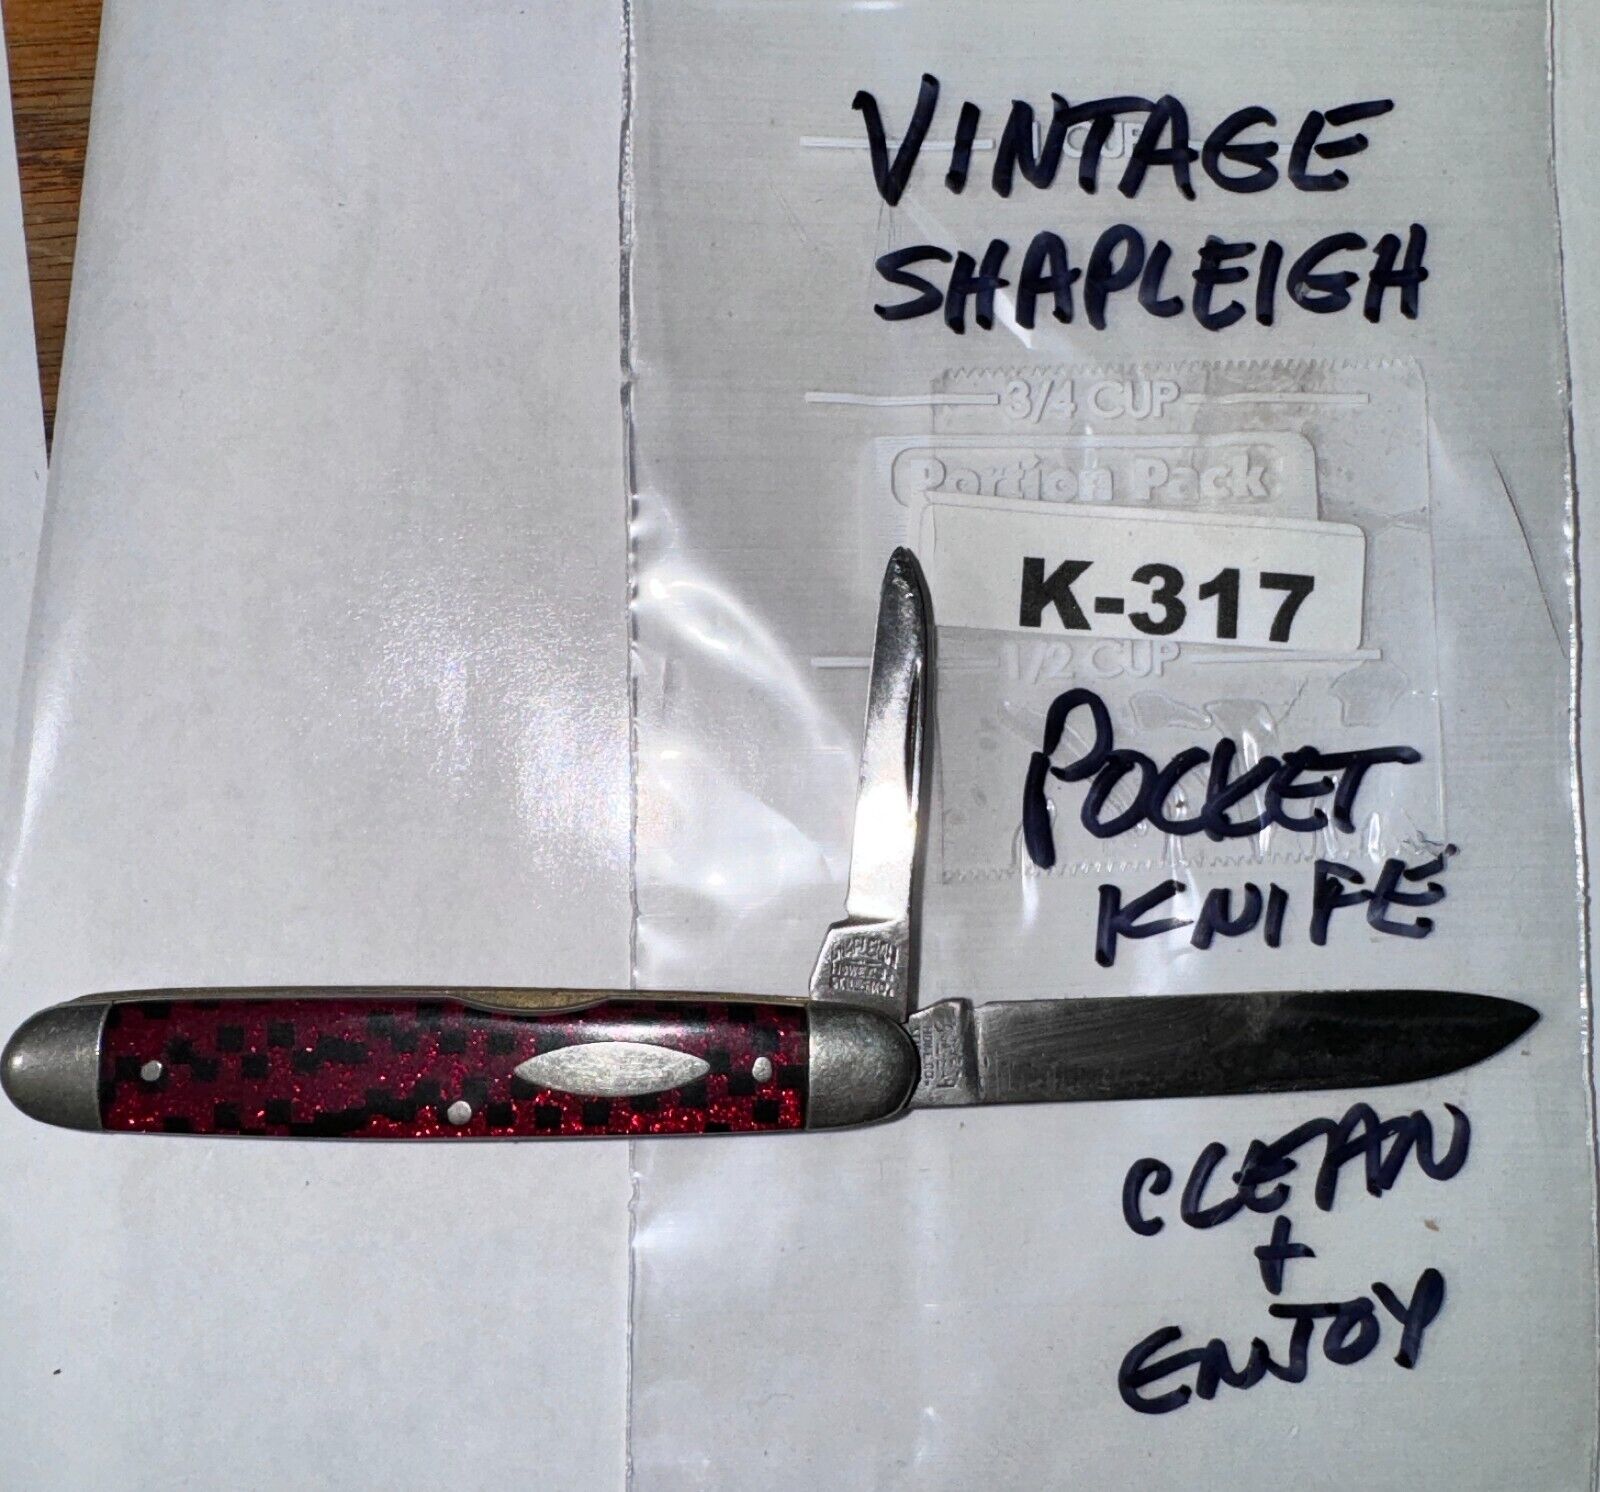 POCKET KNIFE BONANZA: Vintage Shapleigh 2 Blade Pocket Knife K-317